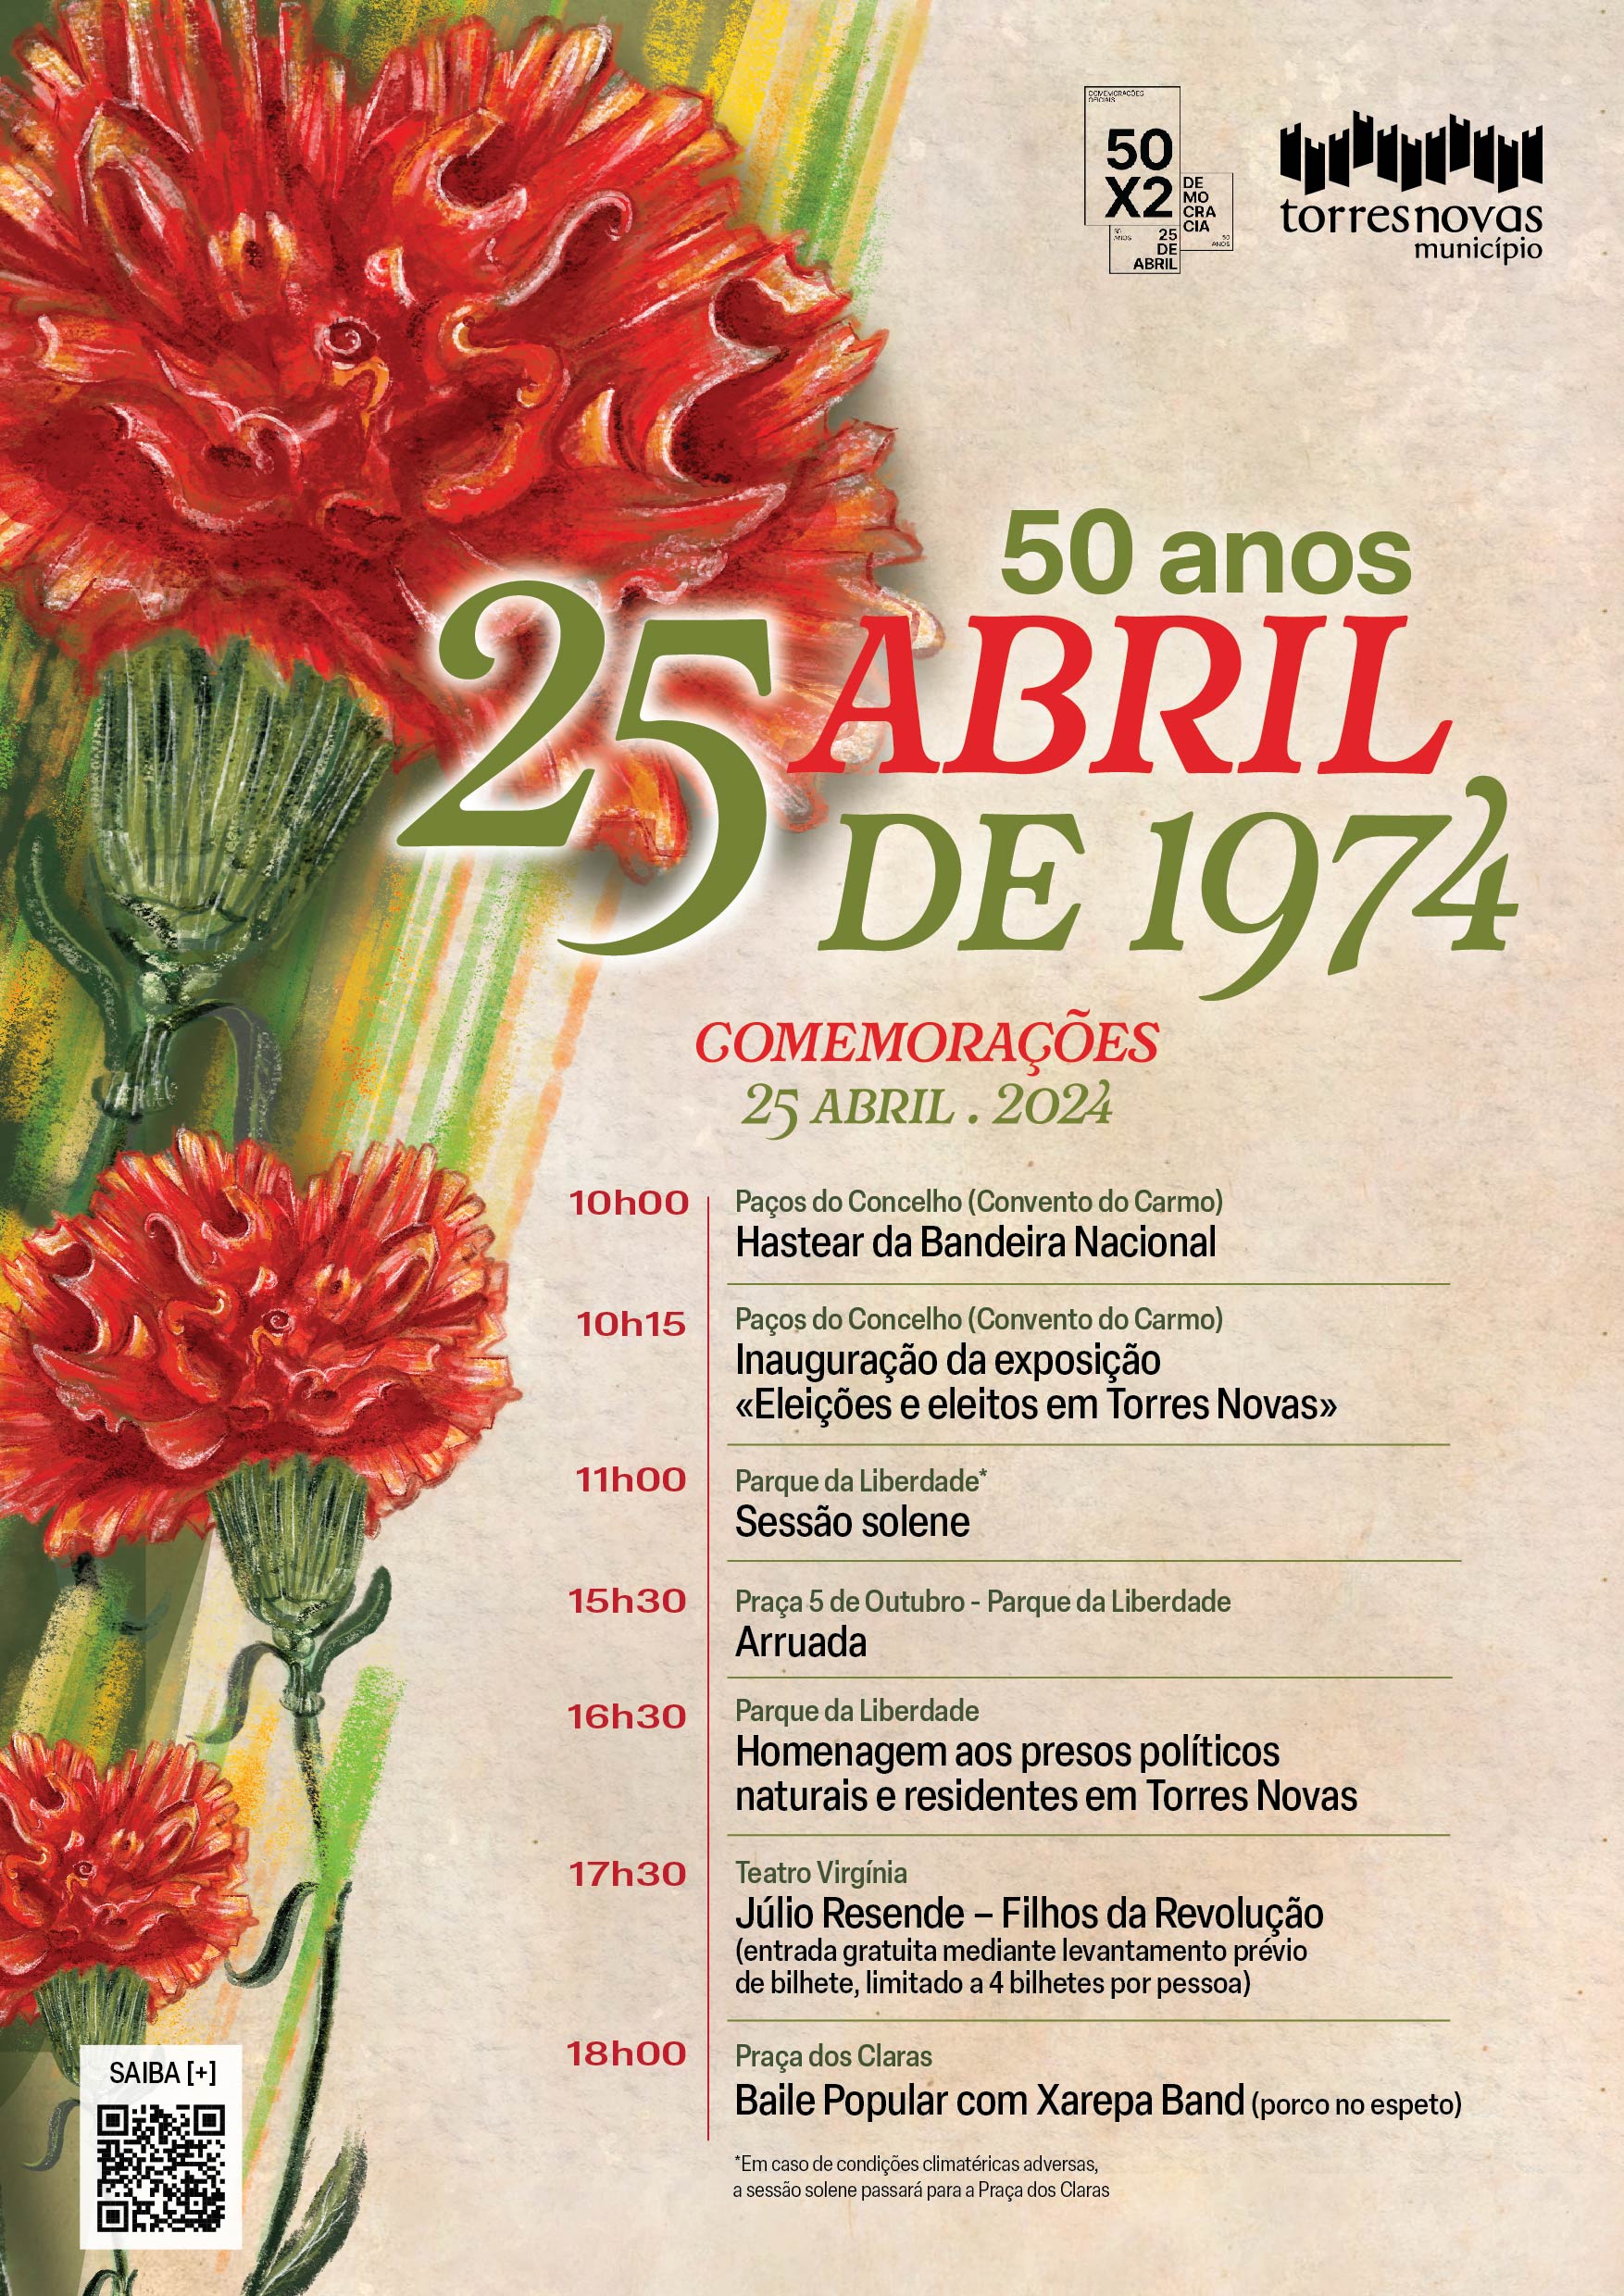 Capa Oficial do Evento Comemorações do 50.º aniversário do 25 de abril